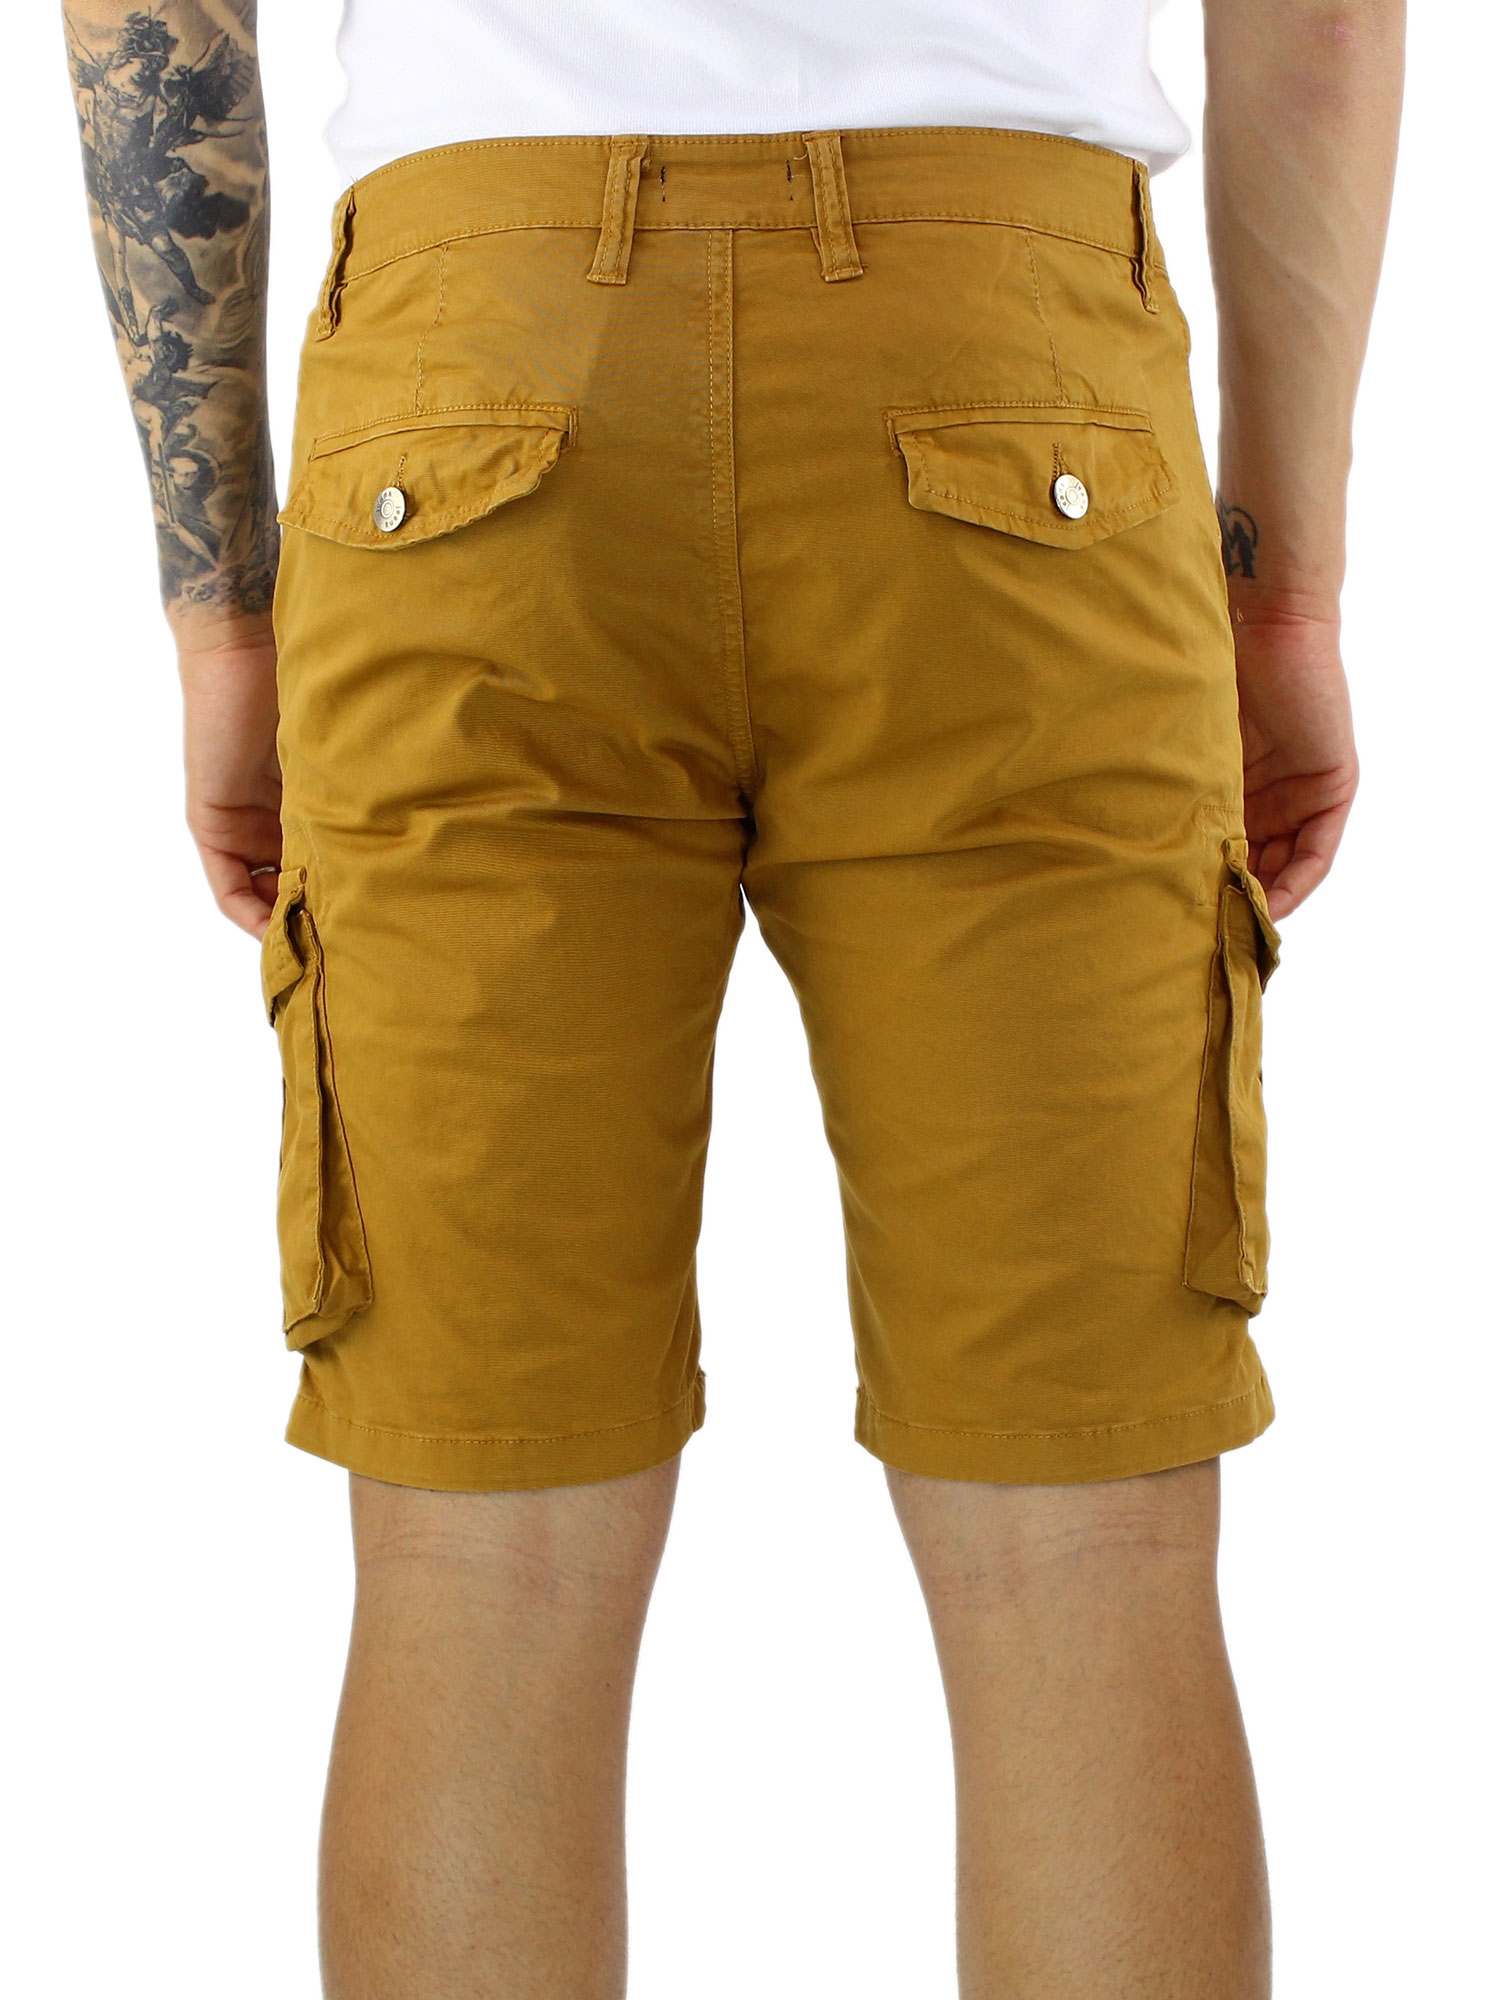 Uomo Abbigliamento da Shorts da Shorts cargo multitasche Shorts con fantasia tie dye a righeMSGM in Cotone da Uomo colore Arancione 